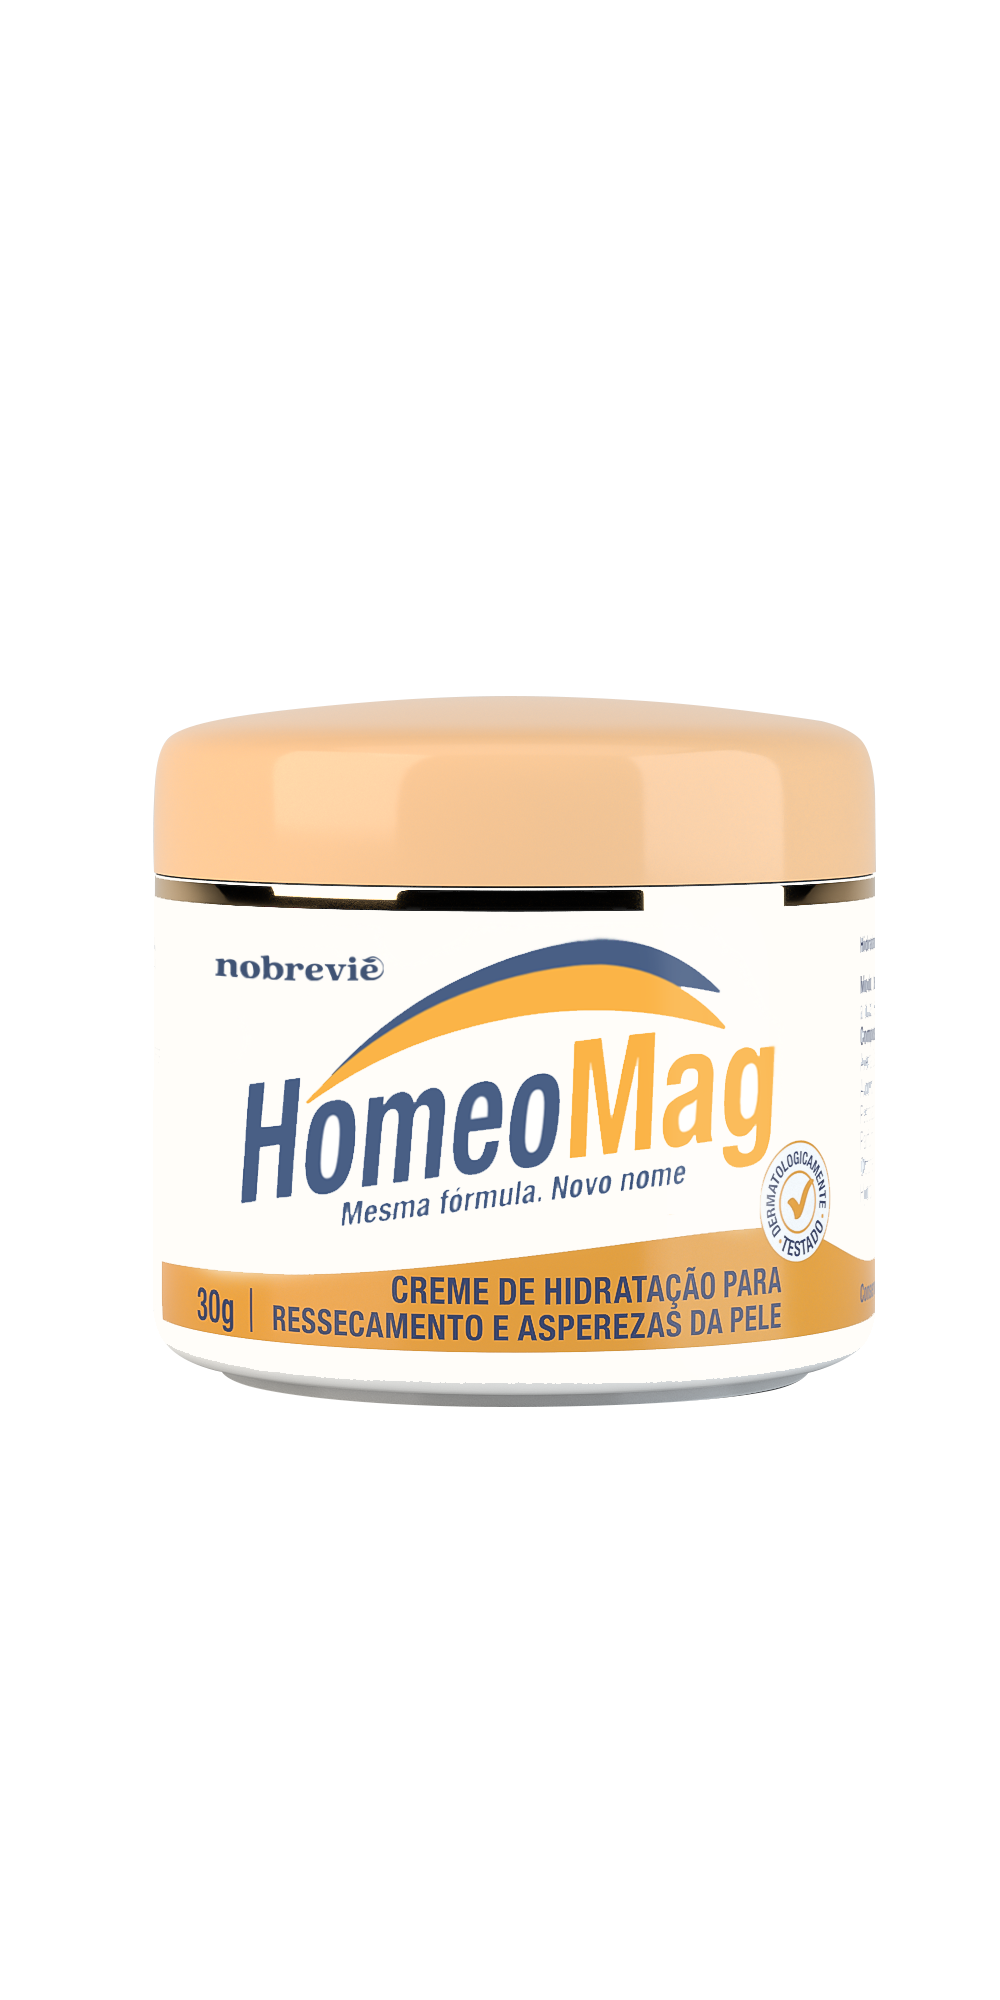 HomeoMag - Creme de hidratação para ressecamento e asperezas da pele